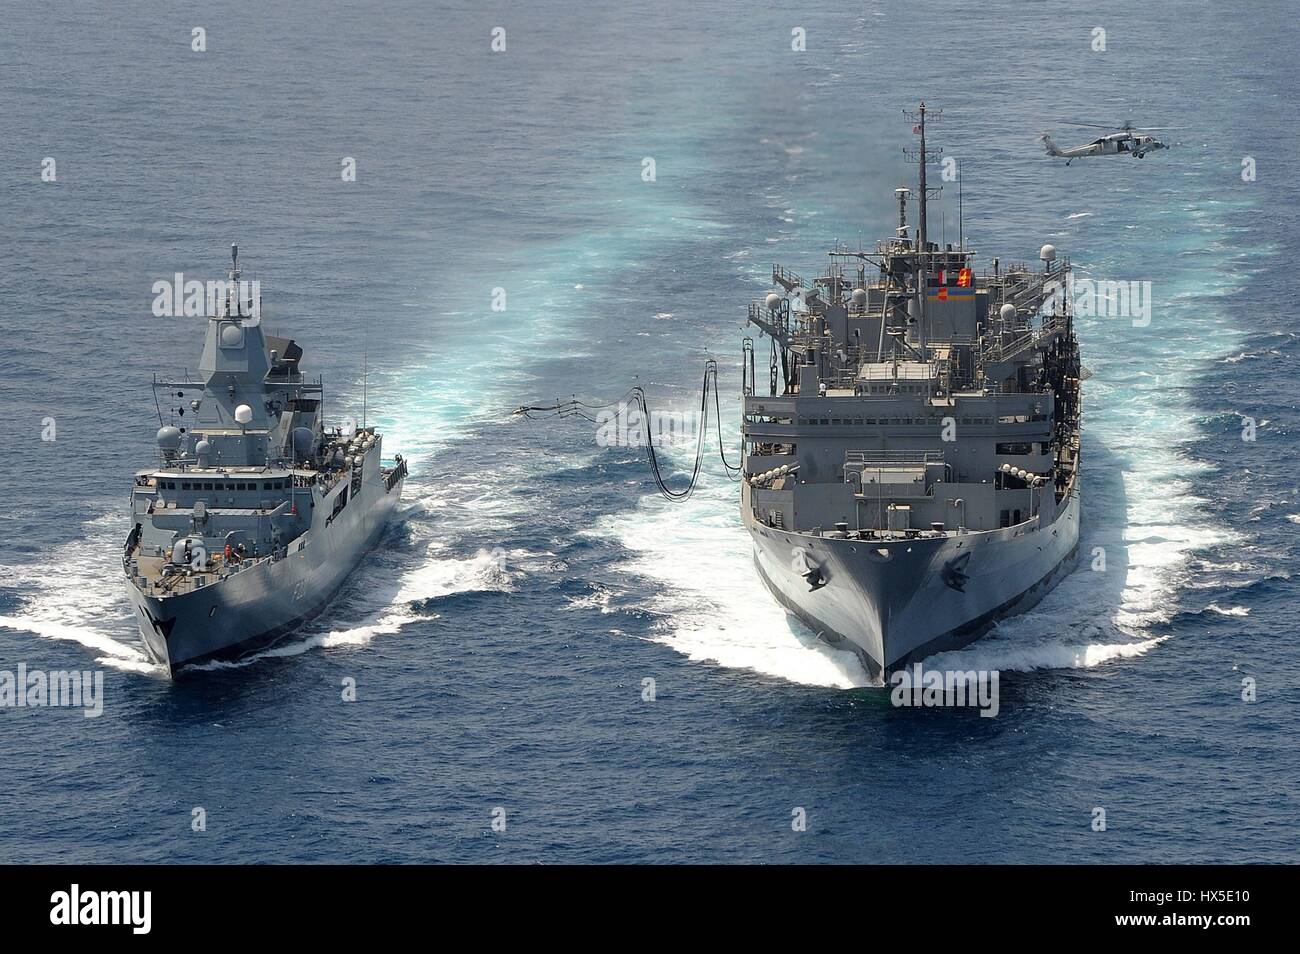 La marina militare tedesca frigate FGS Hamburd (F220) e i militari di comando Sealift fast combattere la nave appoggio USNS Ponte (T-AOE 10) durante un rifornimento in mare, mare Arabico, Marzo 23, 2013. Immagine cortesia Ryan D. McLearnon/US Navy. Foto Stock